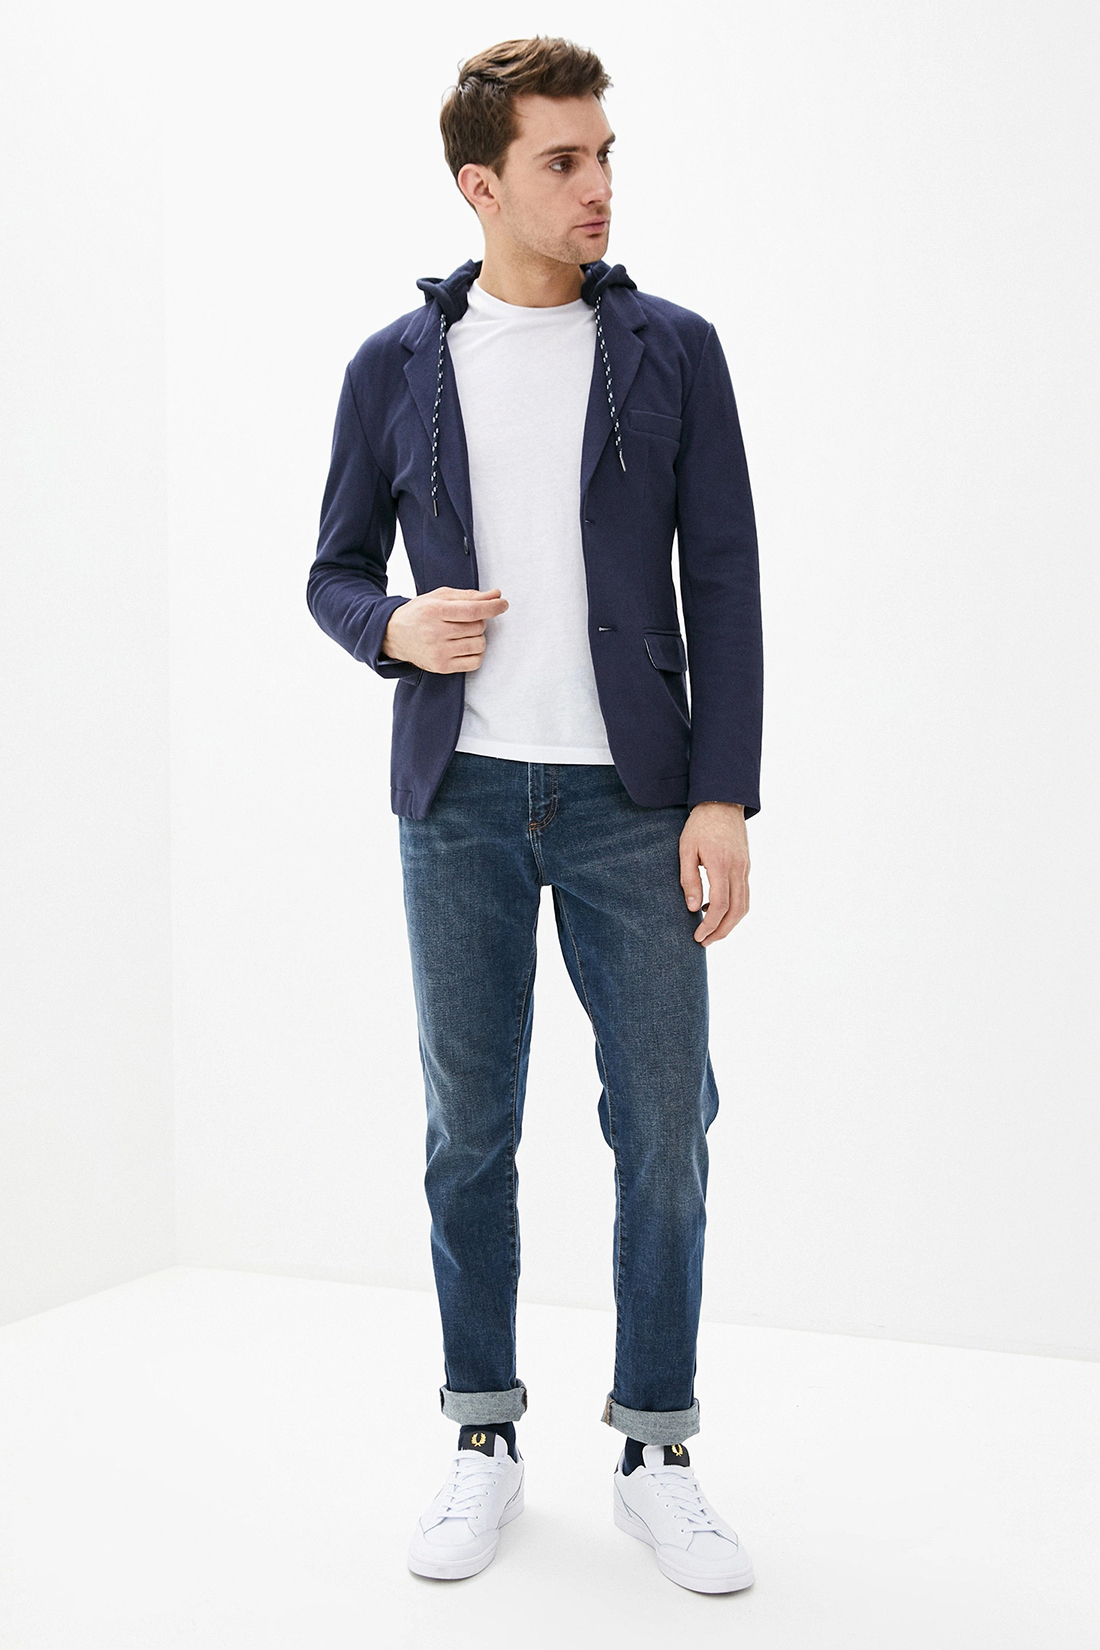 Пиджак с капюшоном (арт. baon B620005), размер XL, цвет синий Пиджак с капюшоном (арт. baon B620005) - фото 4